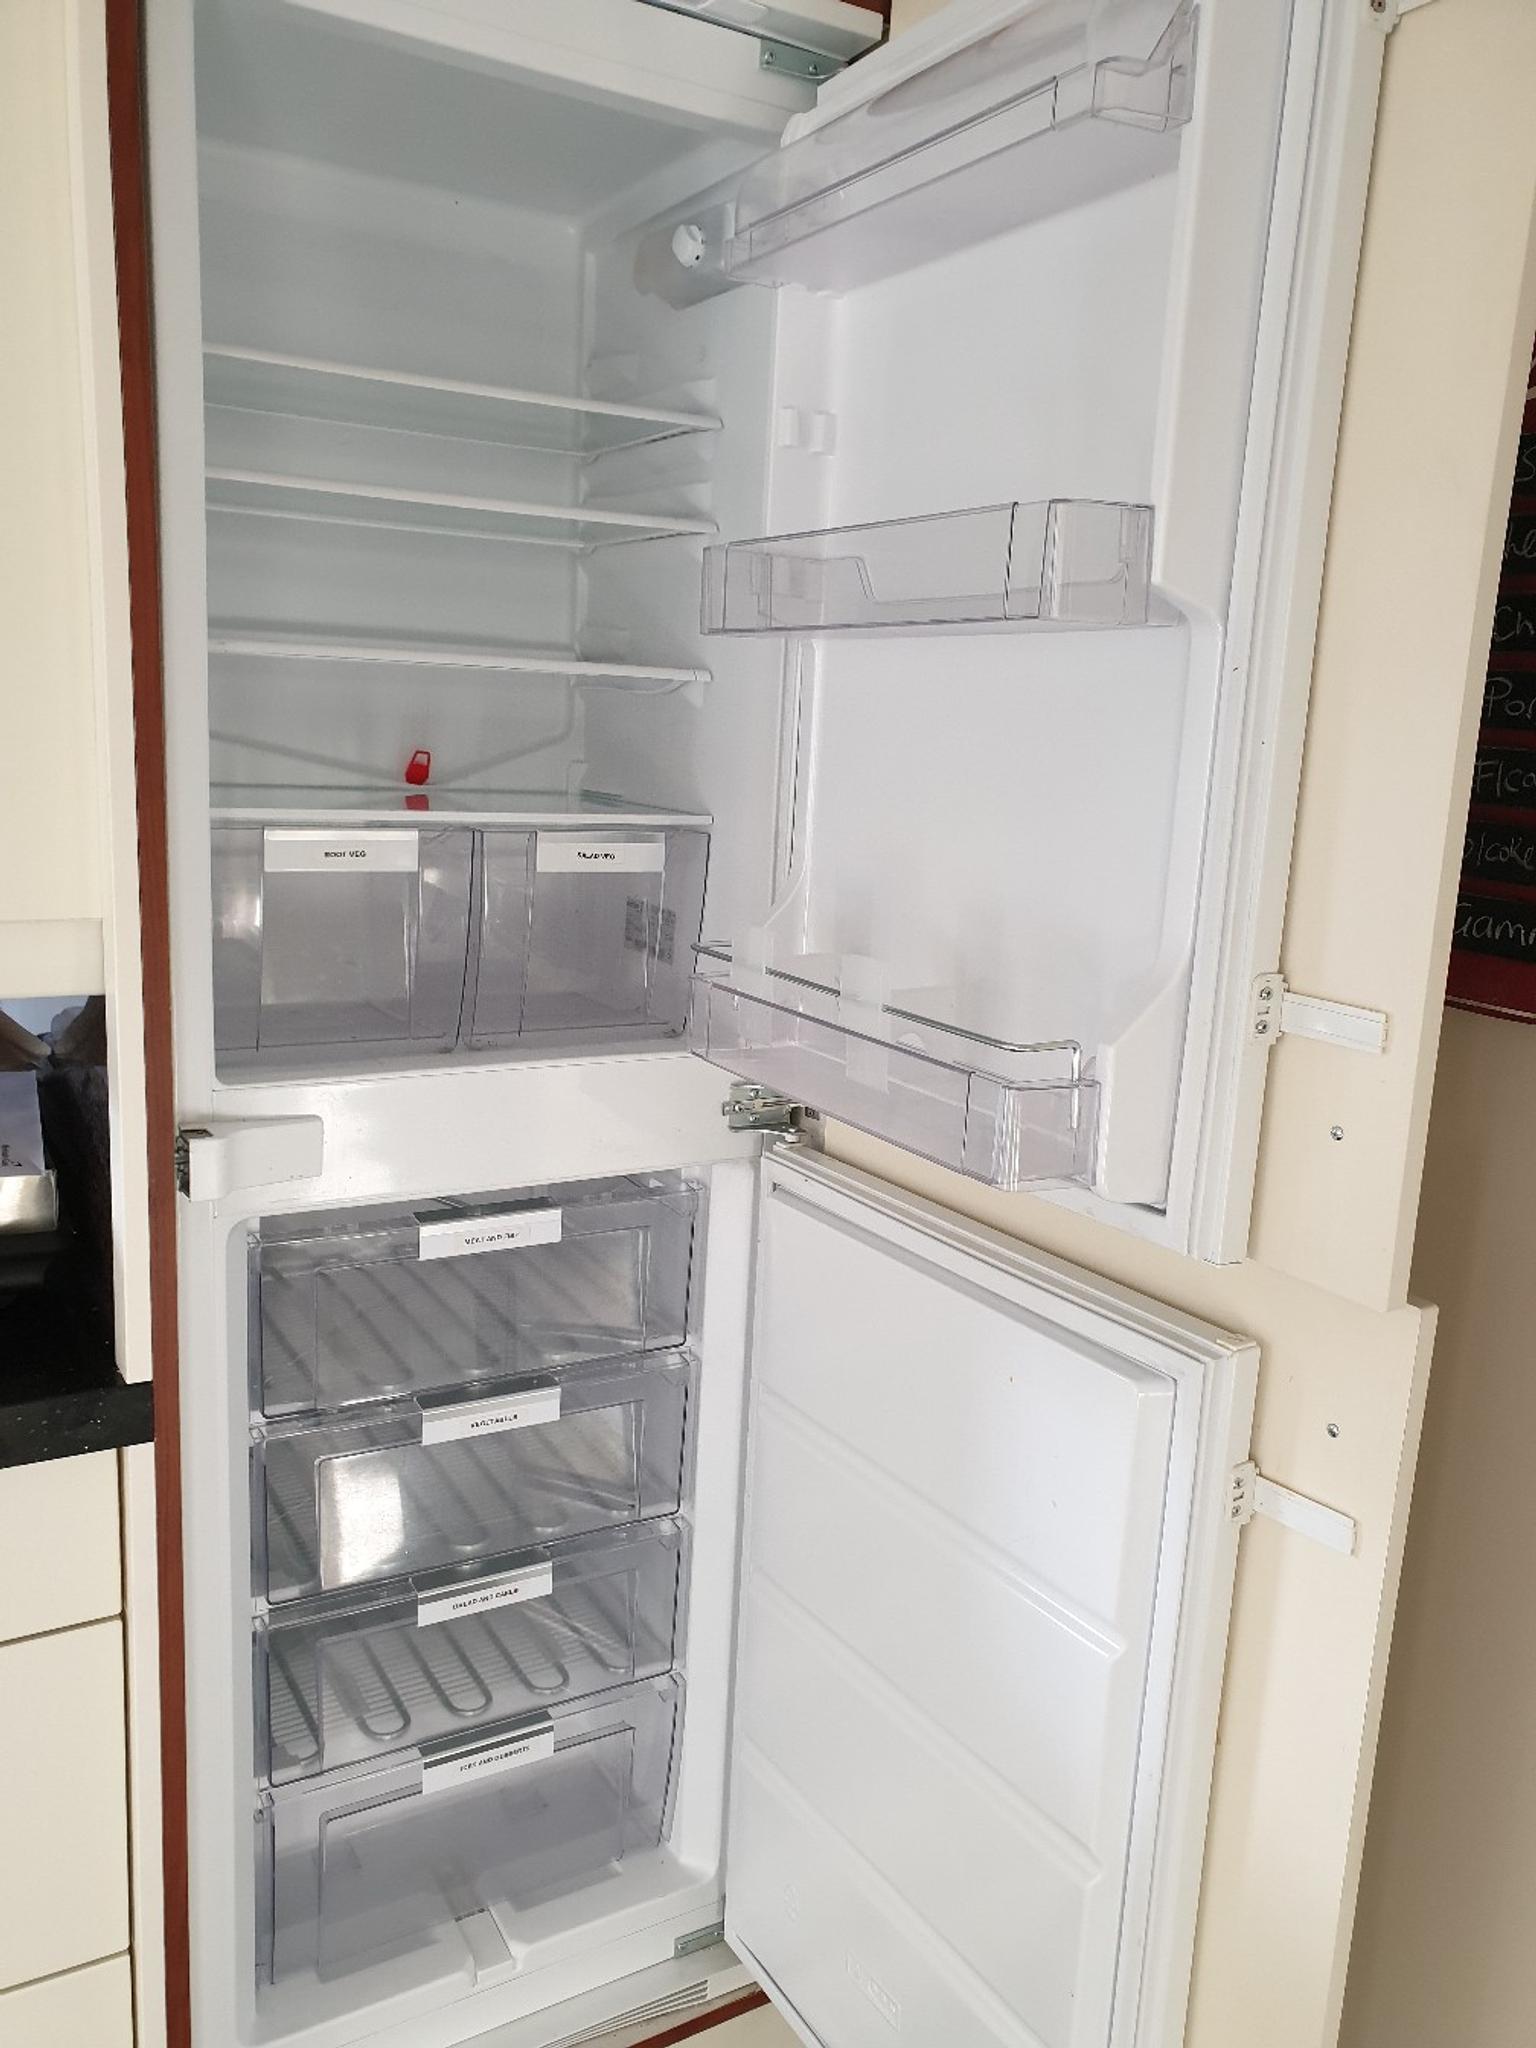 Ikea Frostig Integrated Fridge Freezer In Ne3 Tyne For 50 00 For